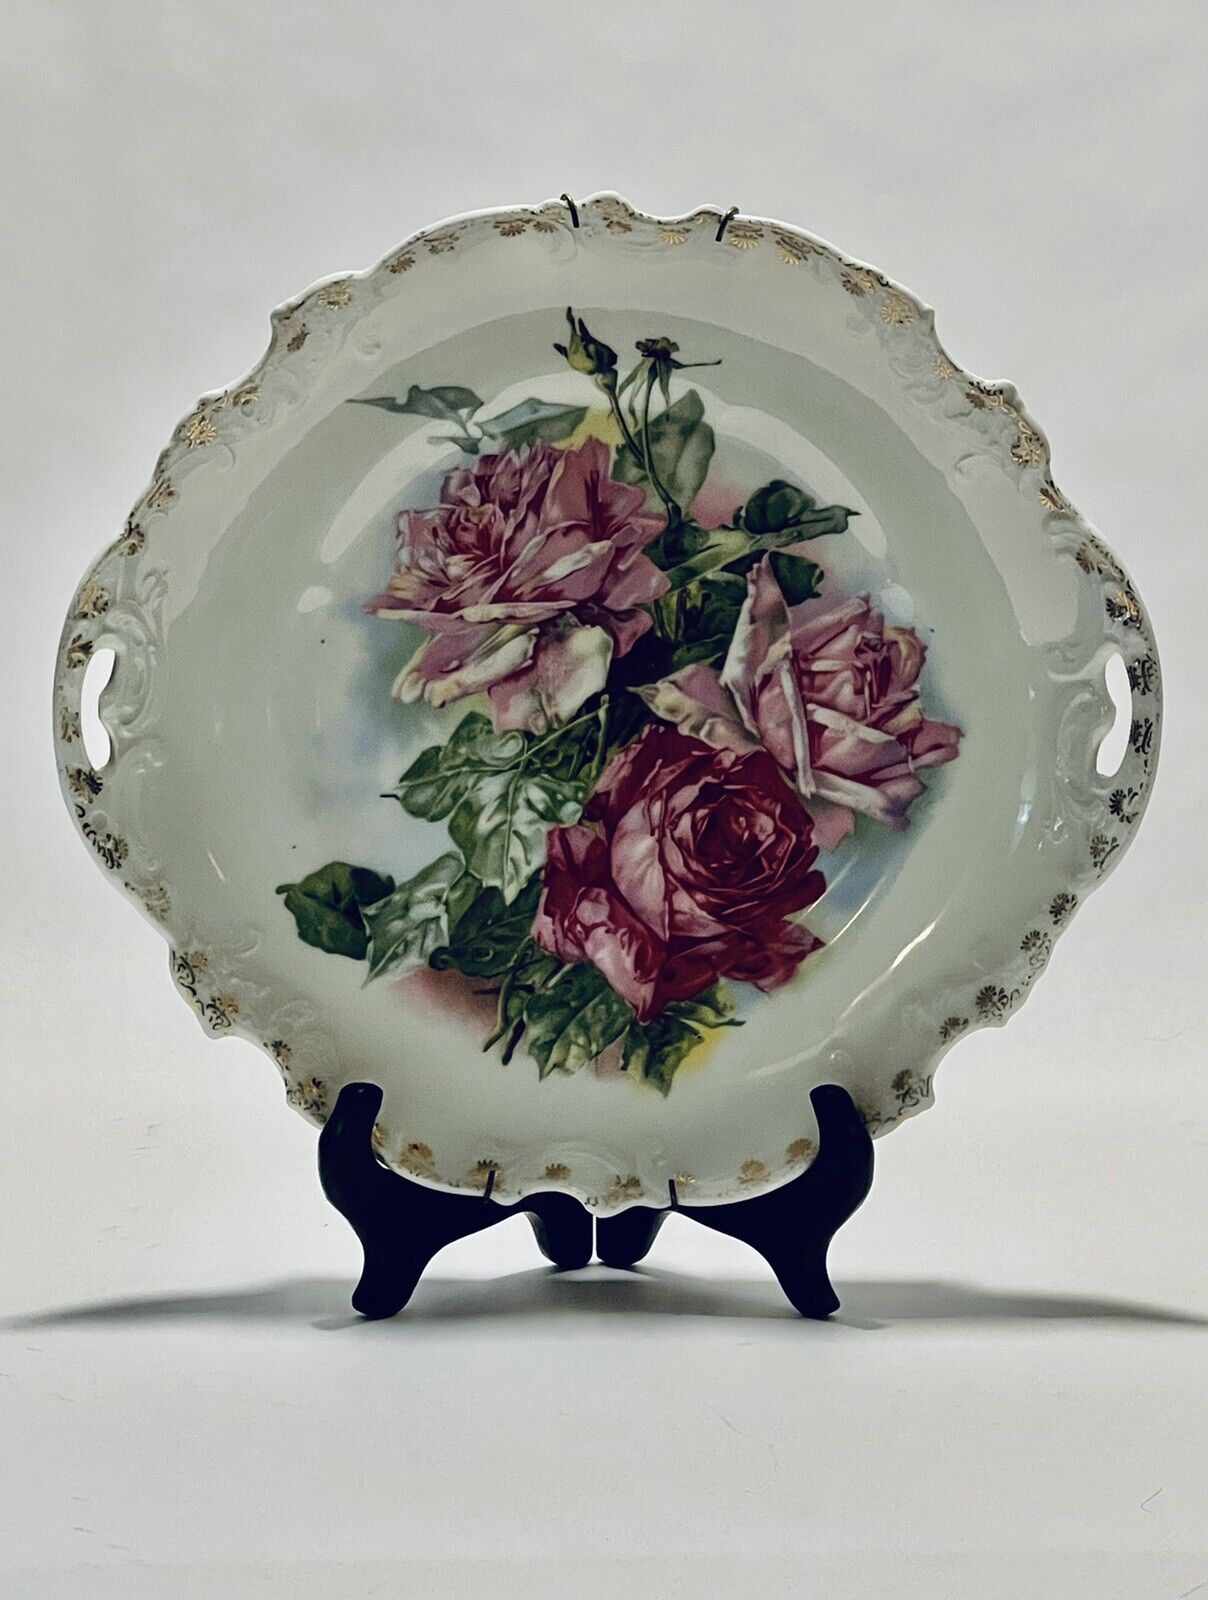 Marvelous Antique Collectible Decorative Porcelain Bavaria Hand Painted Plate